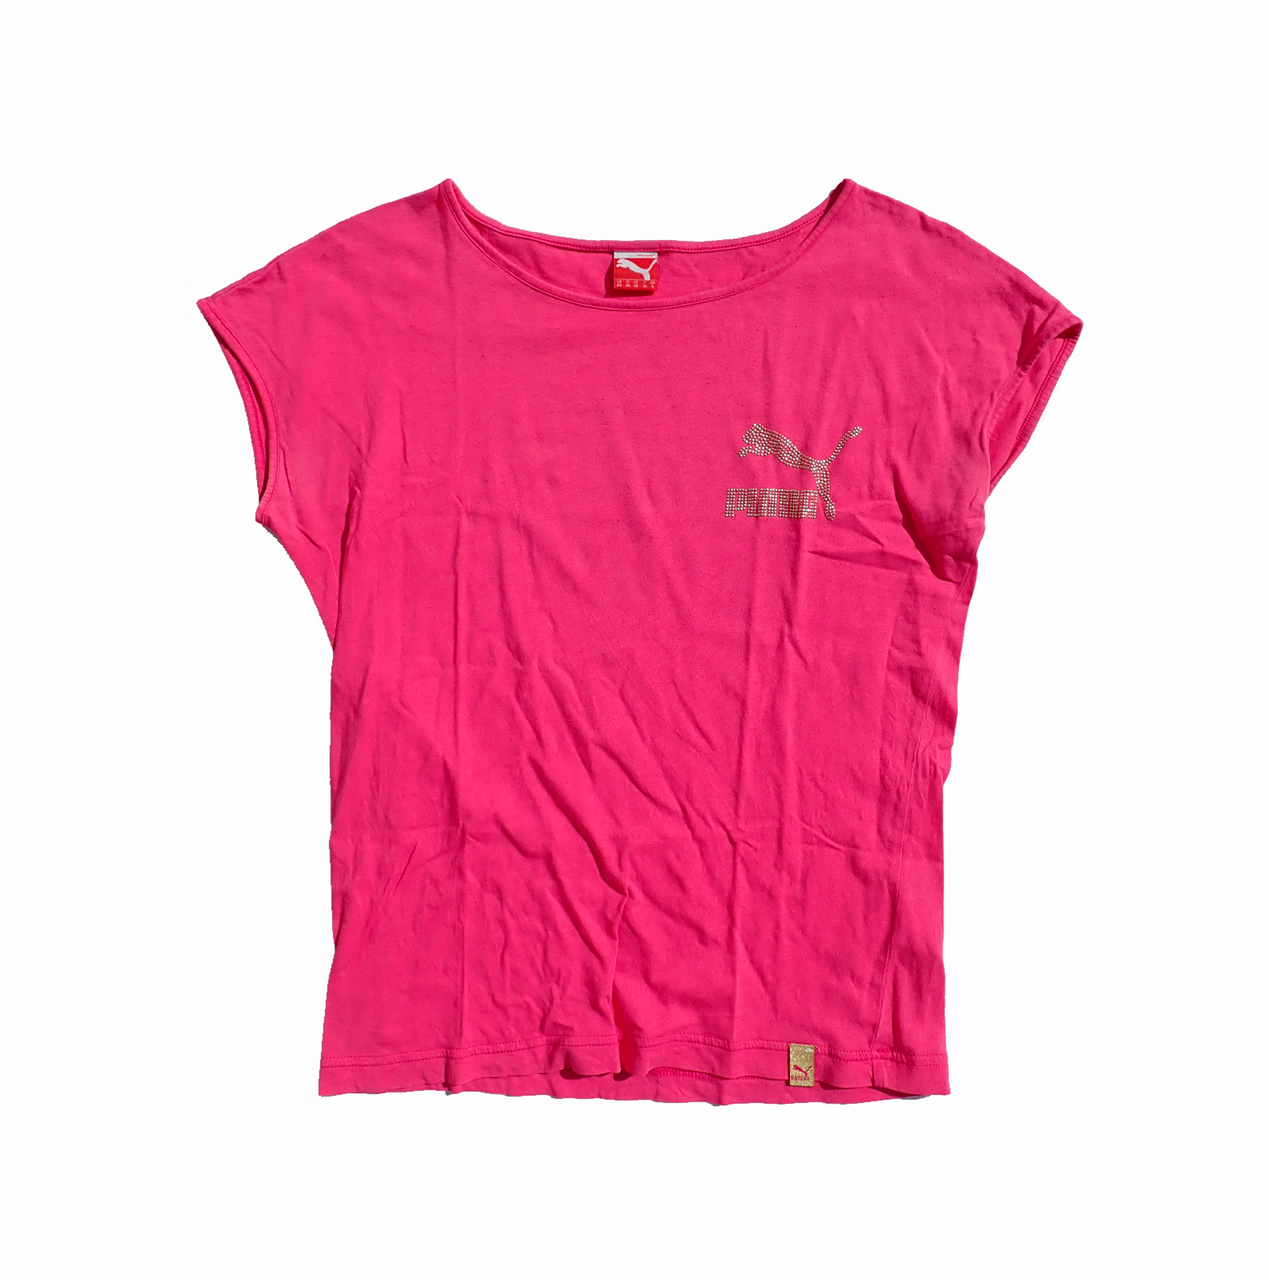 Puma Pink Studded Tshirt